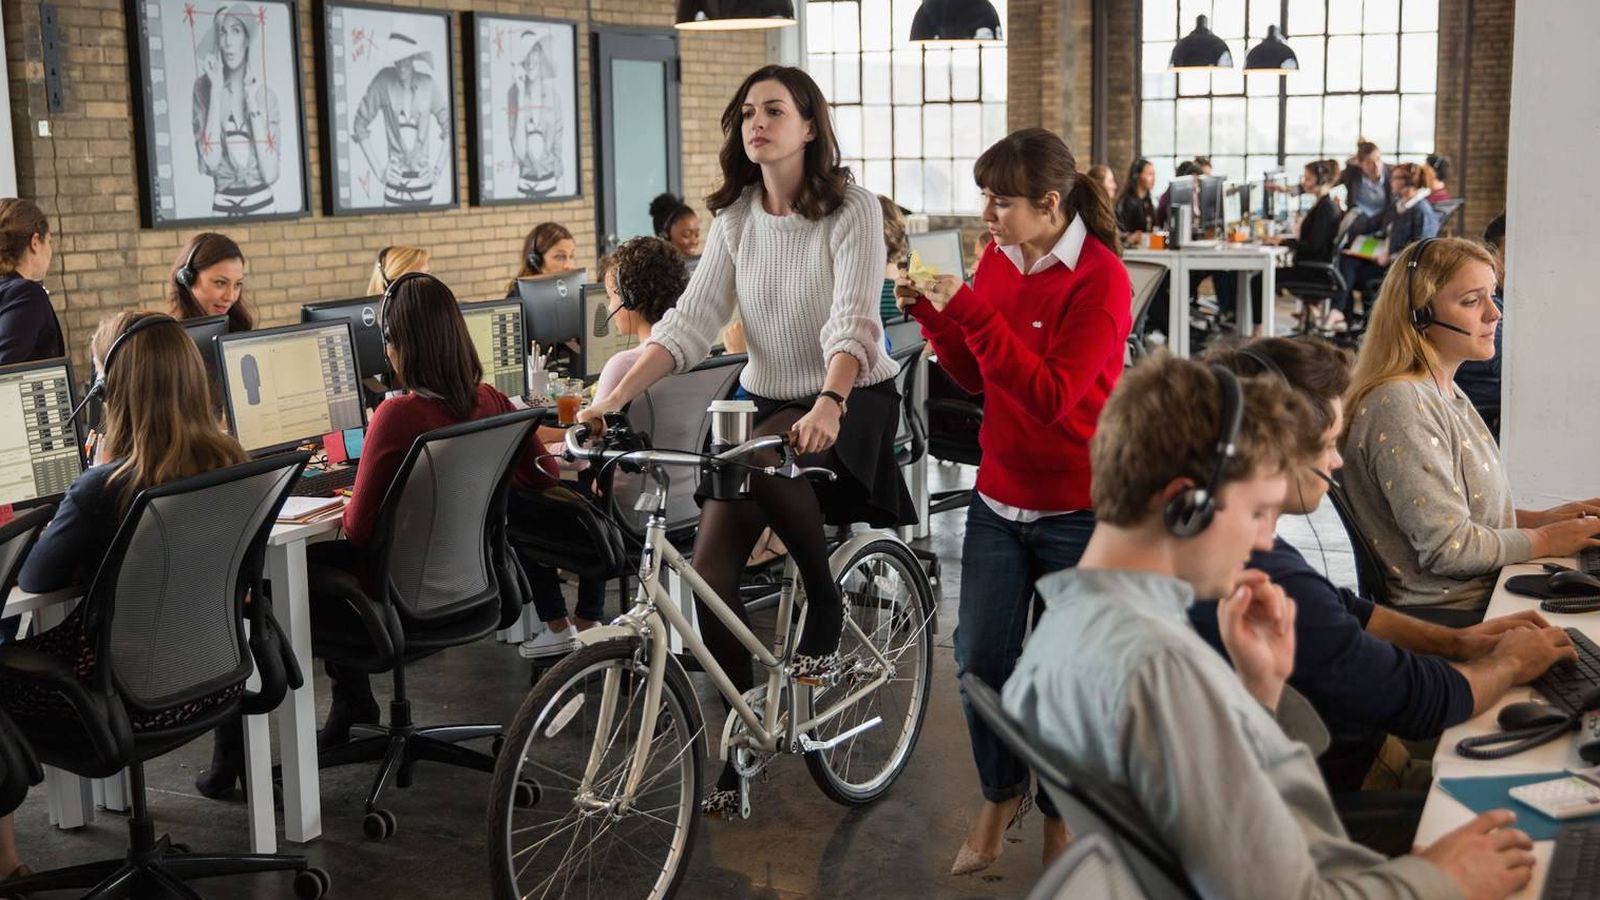 Foto: No hace falta llegar tan lejos como en la película 'El becario'. Lo de la bici dentro de la oficina ya es excesivo.